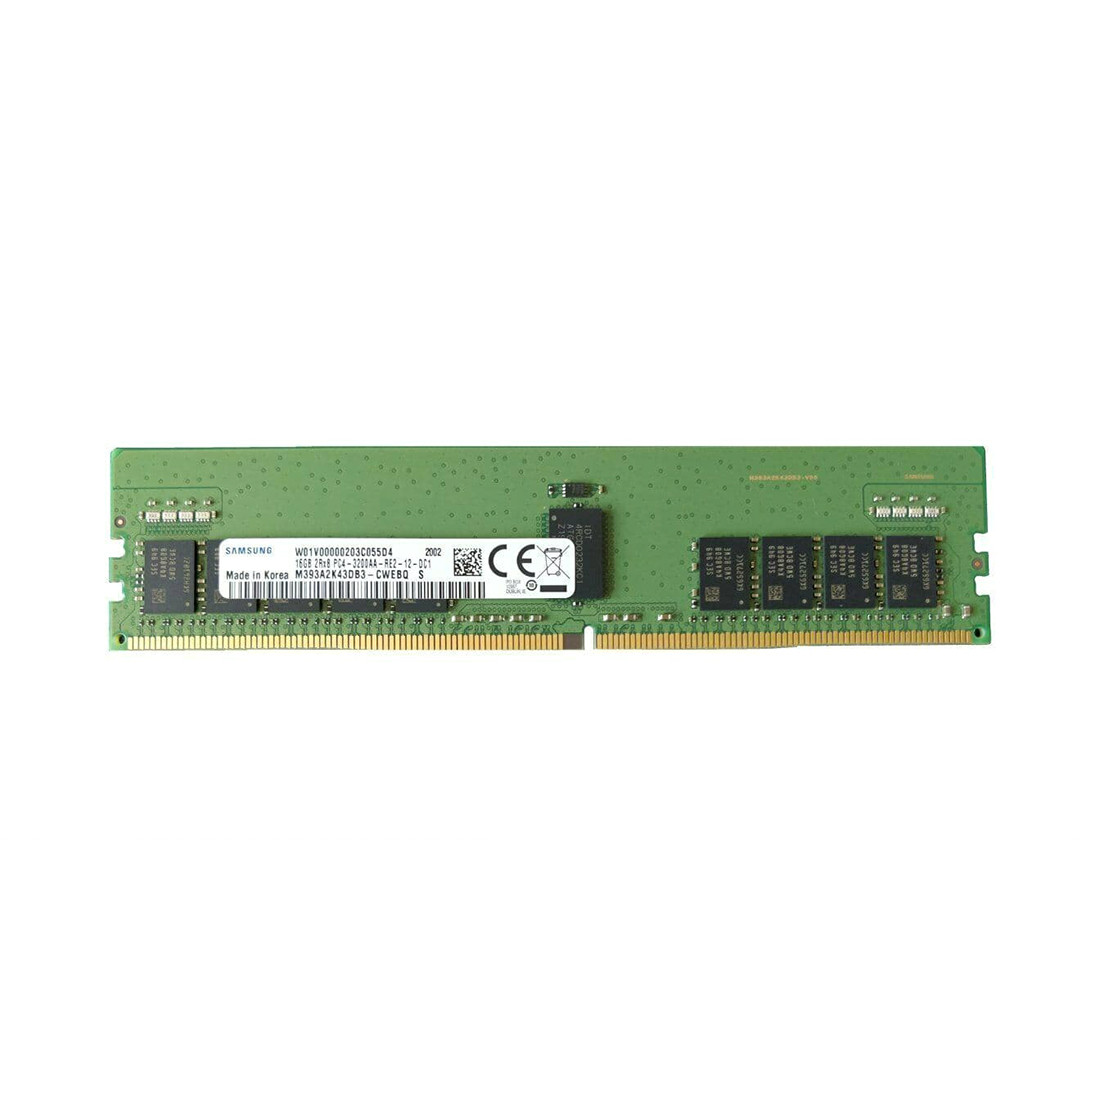 Модуль памяти Samsung M393A2K43DB3-CWE DDR4-3200 ECC RDIMM 16GB 3200MHz